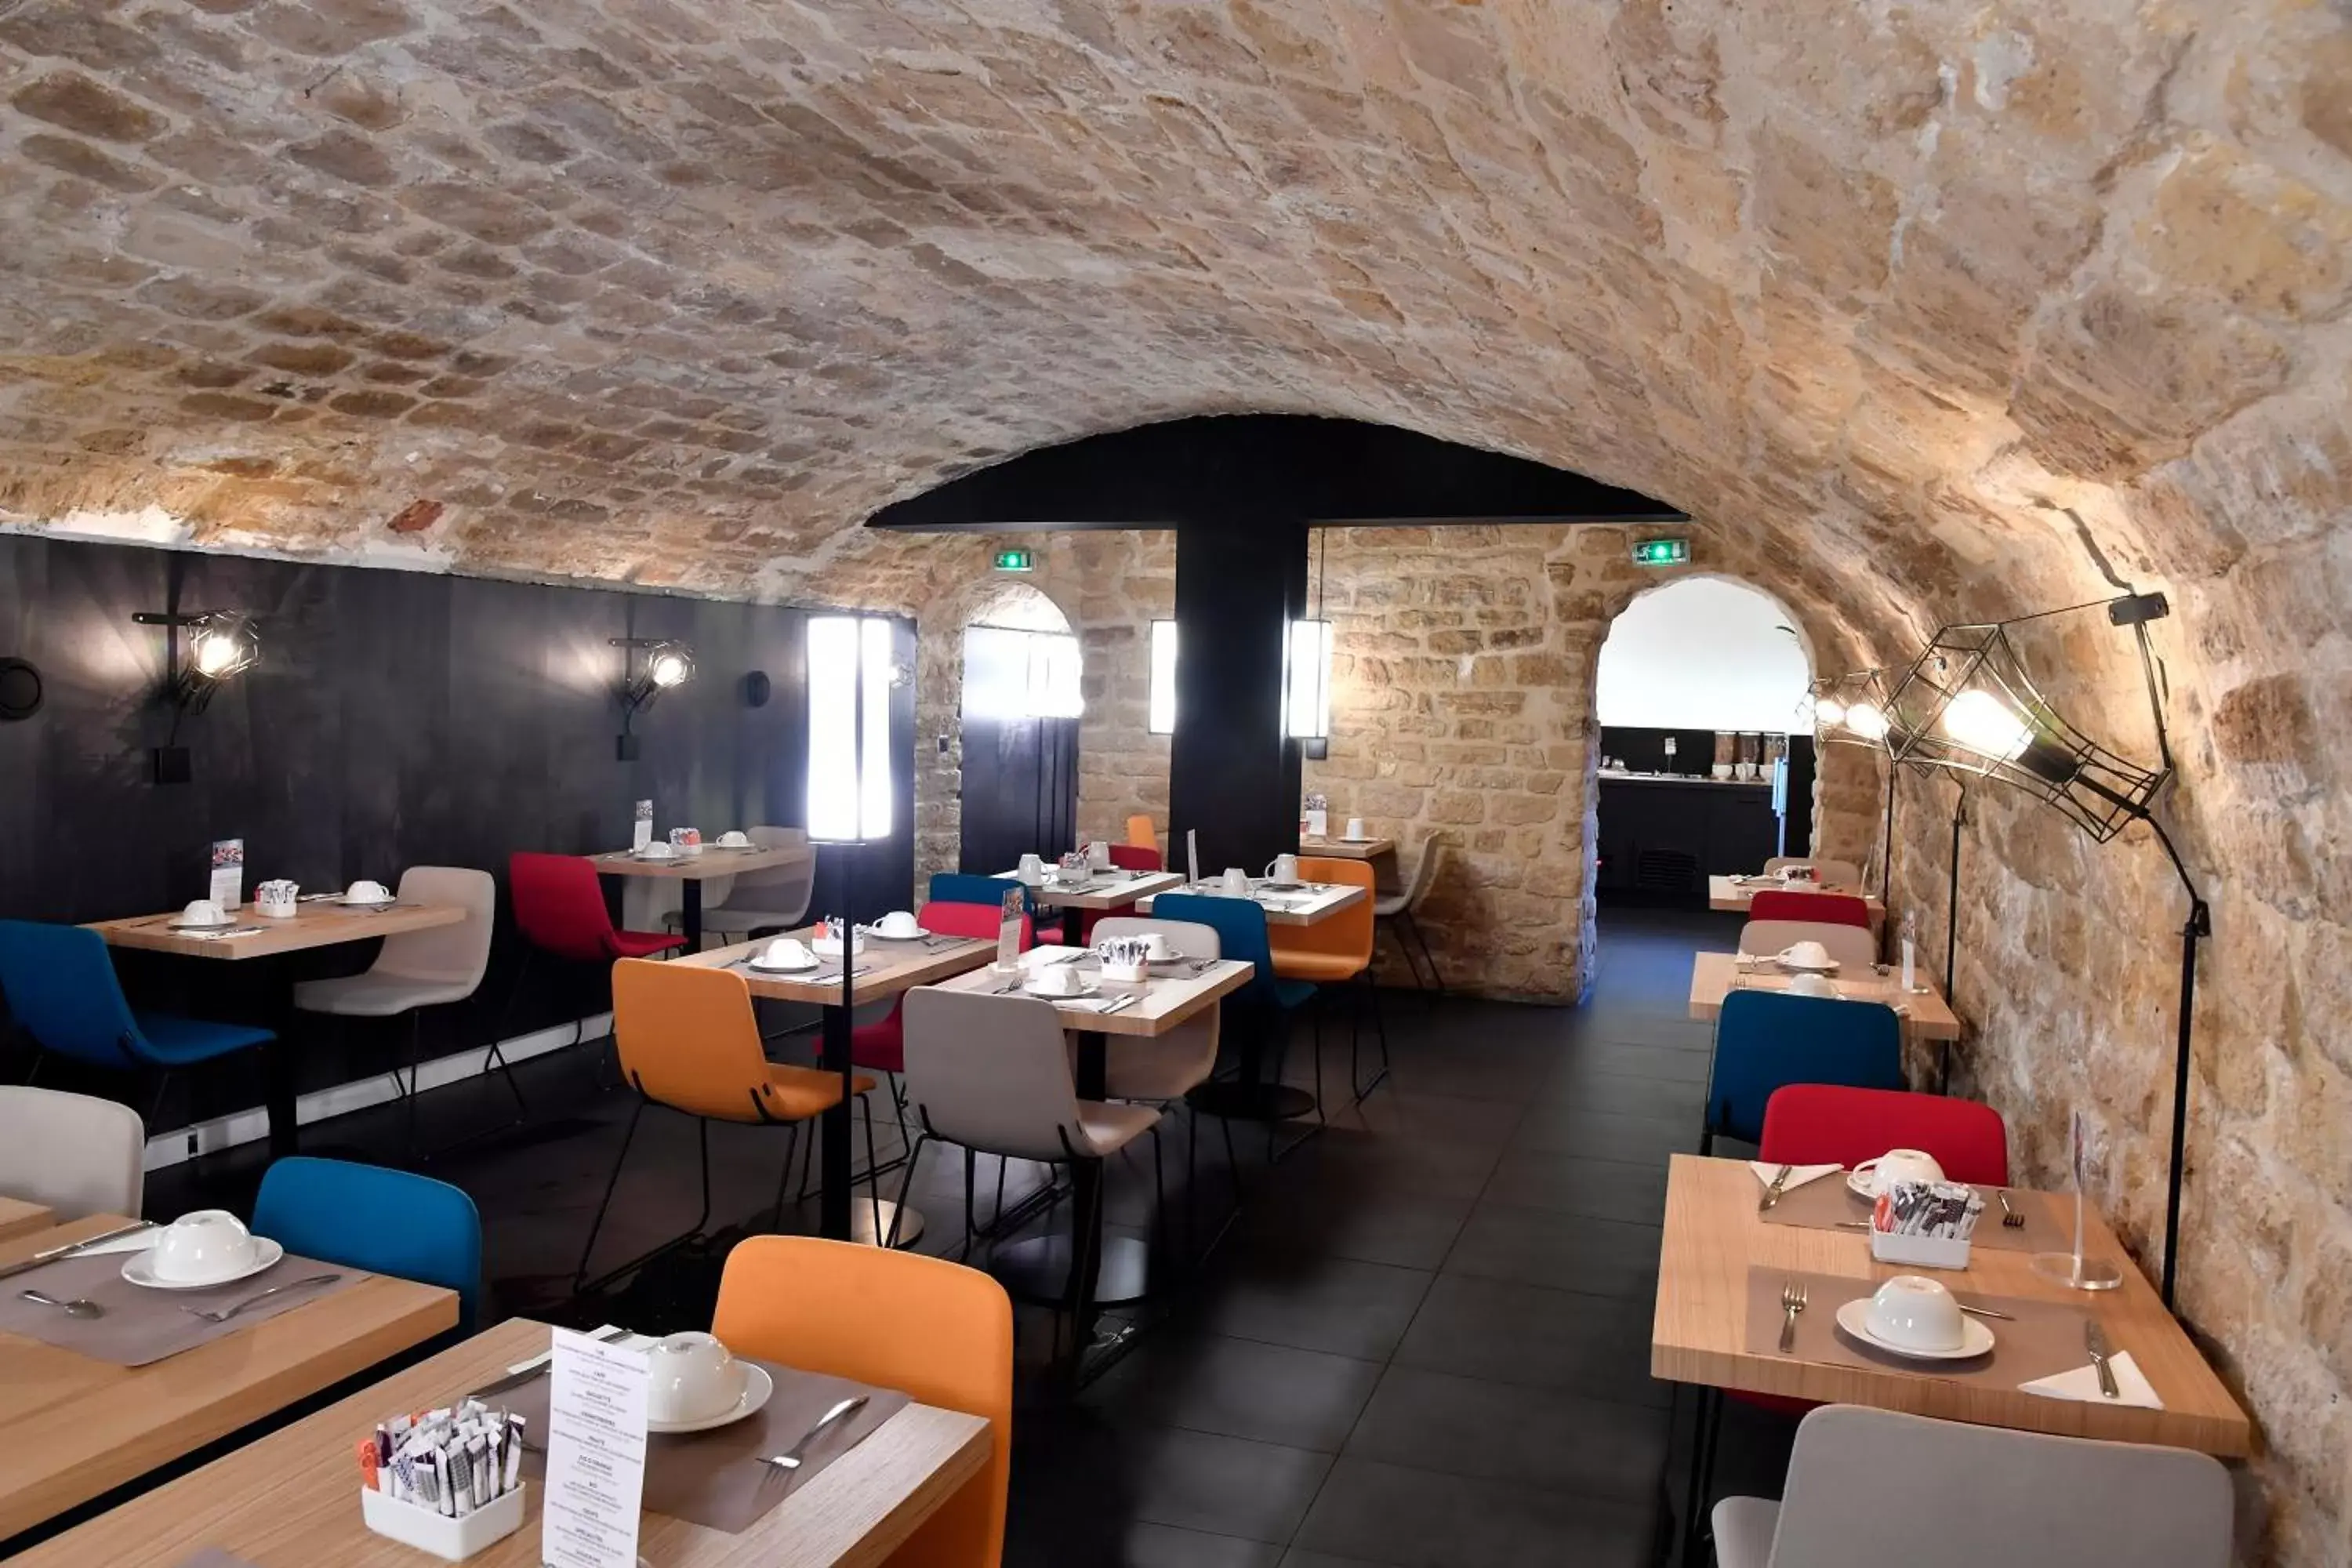 Area and facilities, Restaurant/Places to Eat in Mercure Paris Gare de l'Est